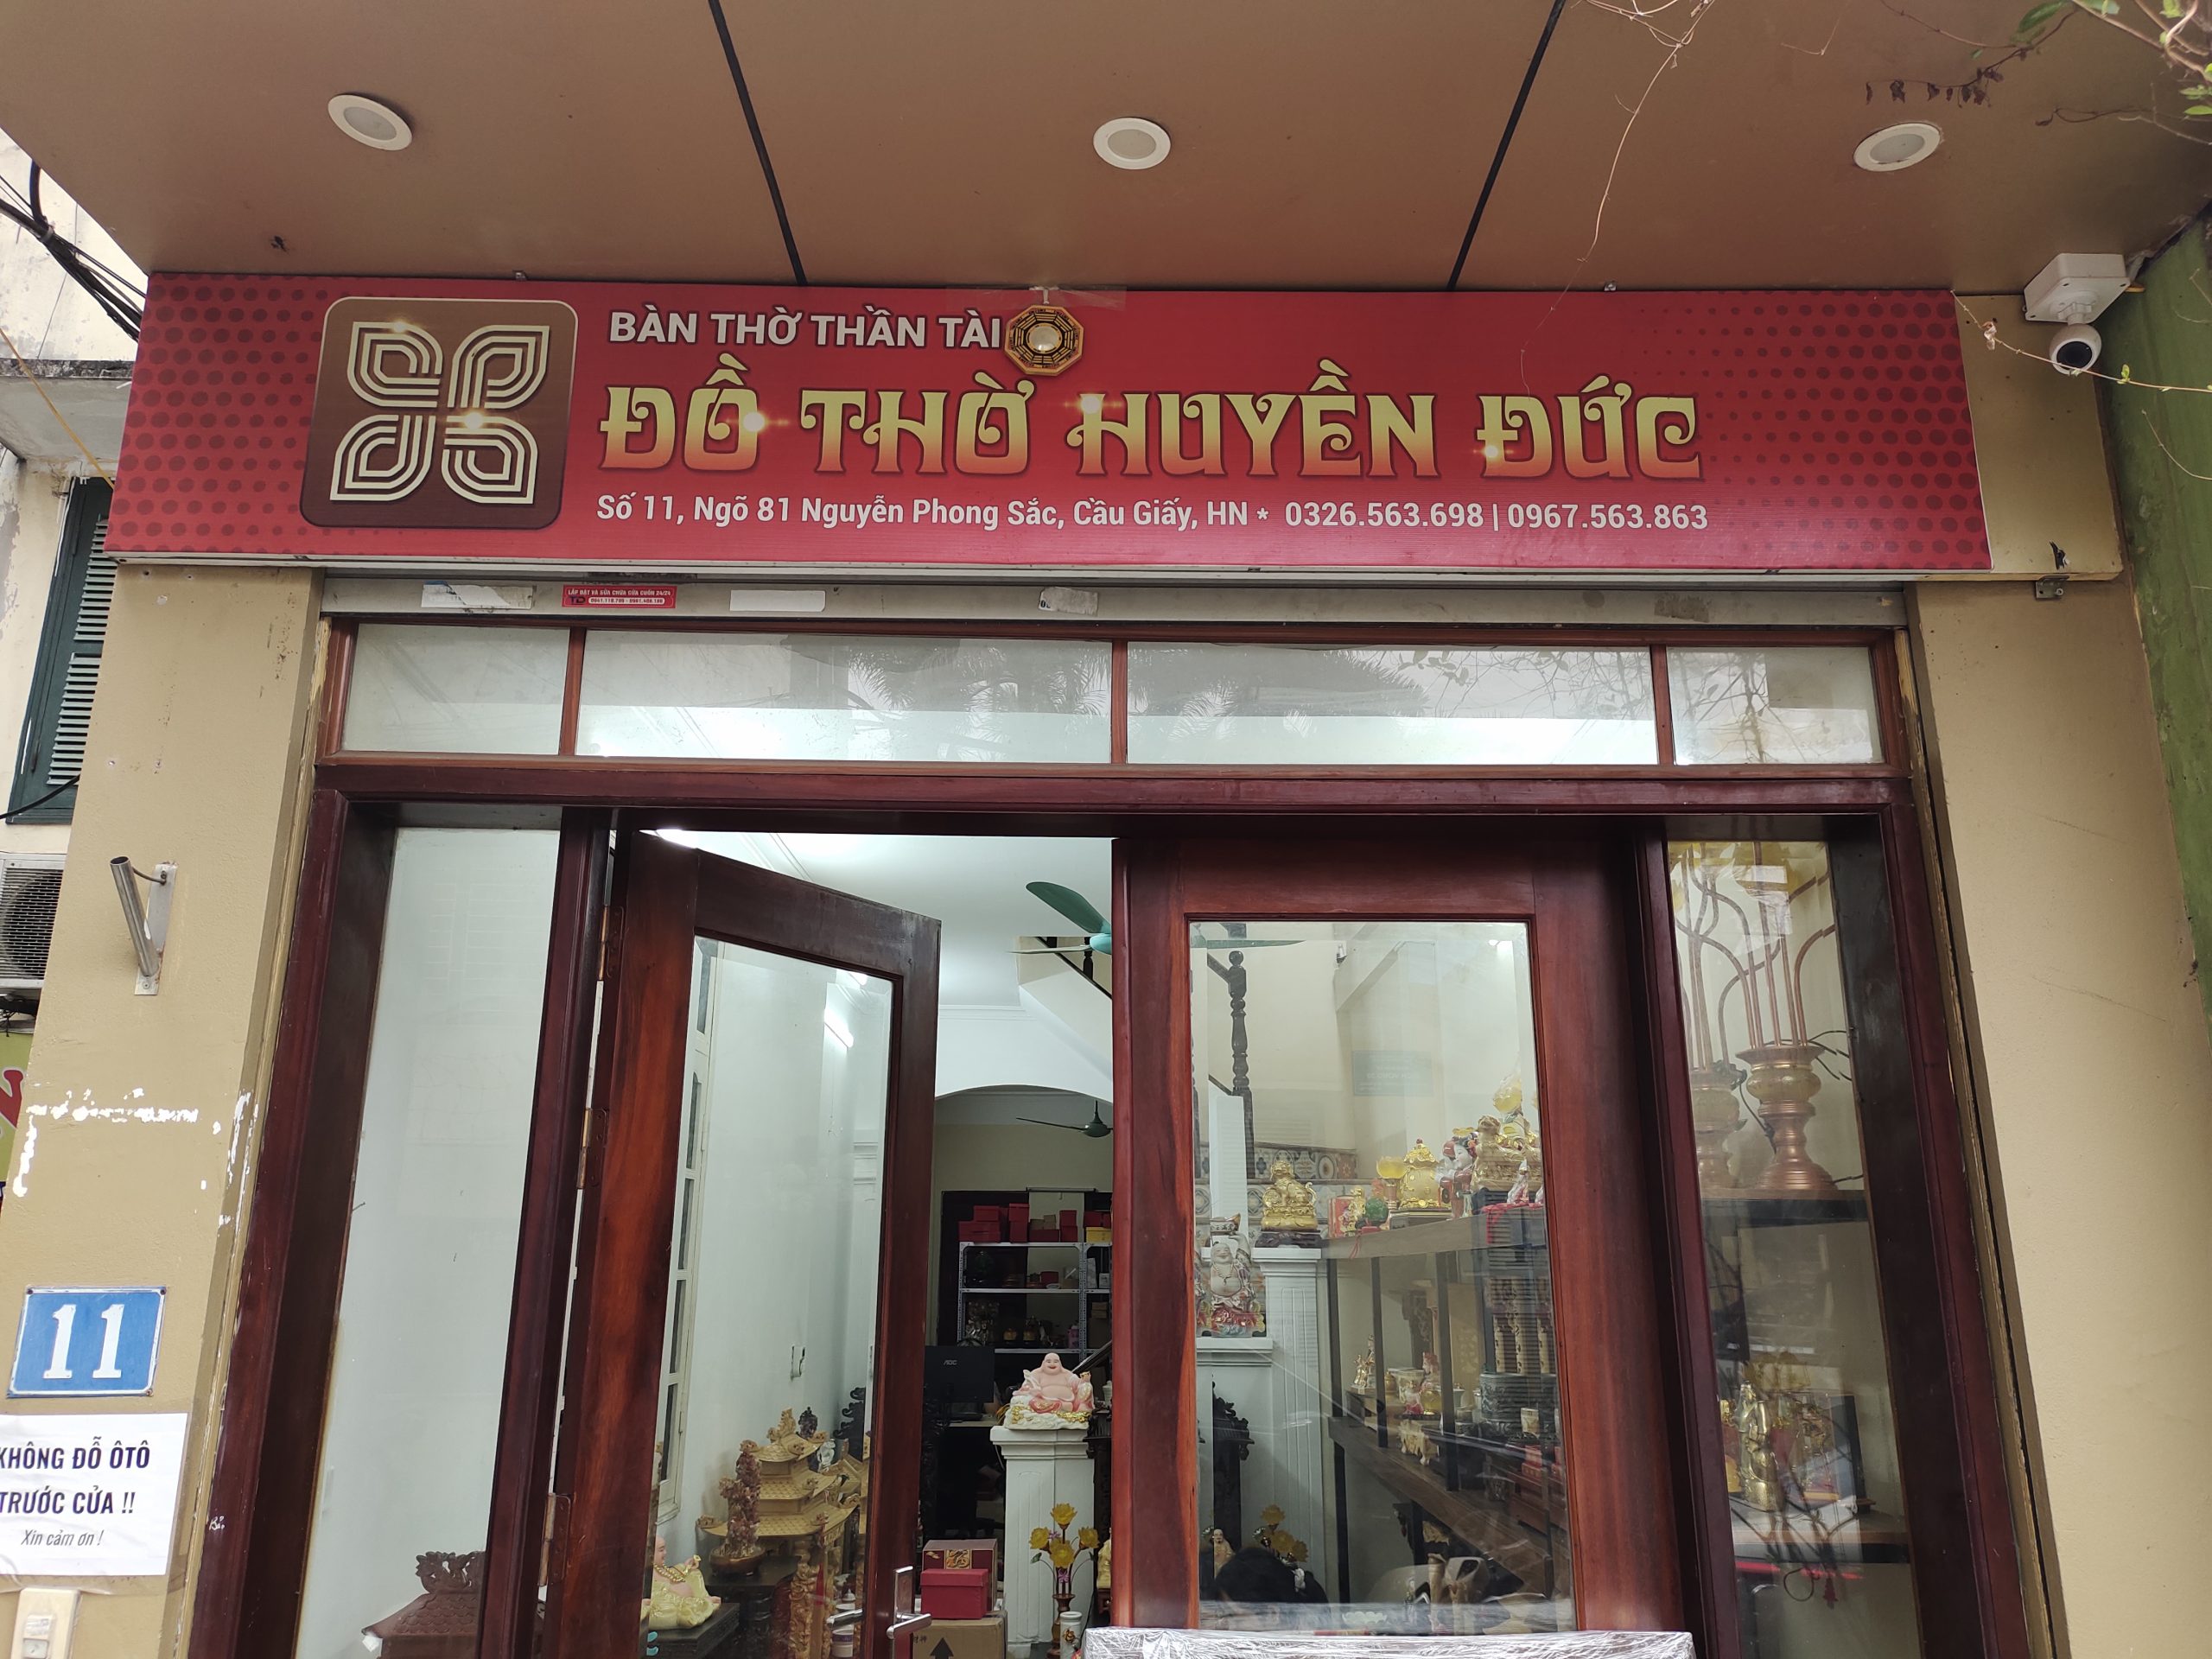 Cửa hàng Đồ Thờ Huyền Đức, số 11 ngõ 81 Nguyễn Phong Sắc, Cầu Giấy, Hà Nội